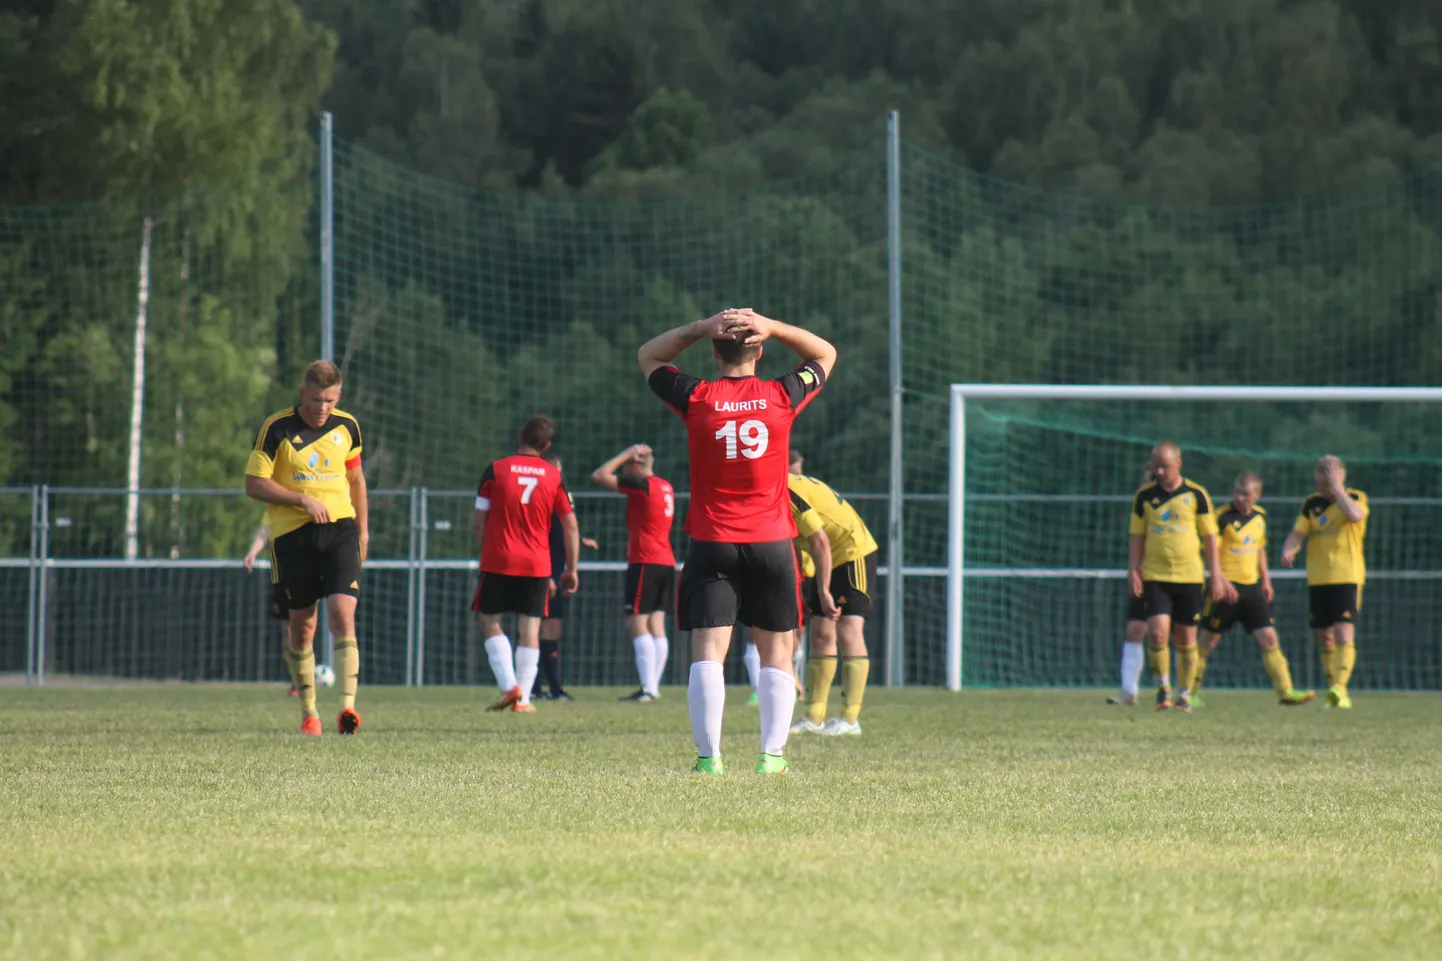 Футболисты Navi (в красных футболках) проиграли матч со счетом 2:3.